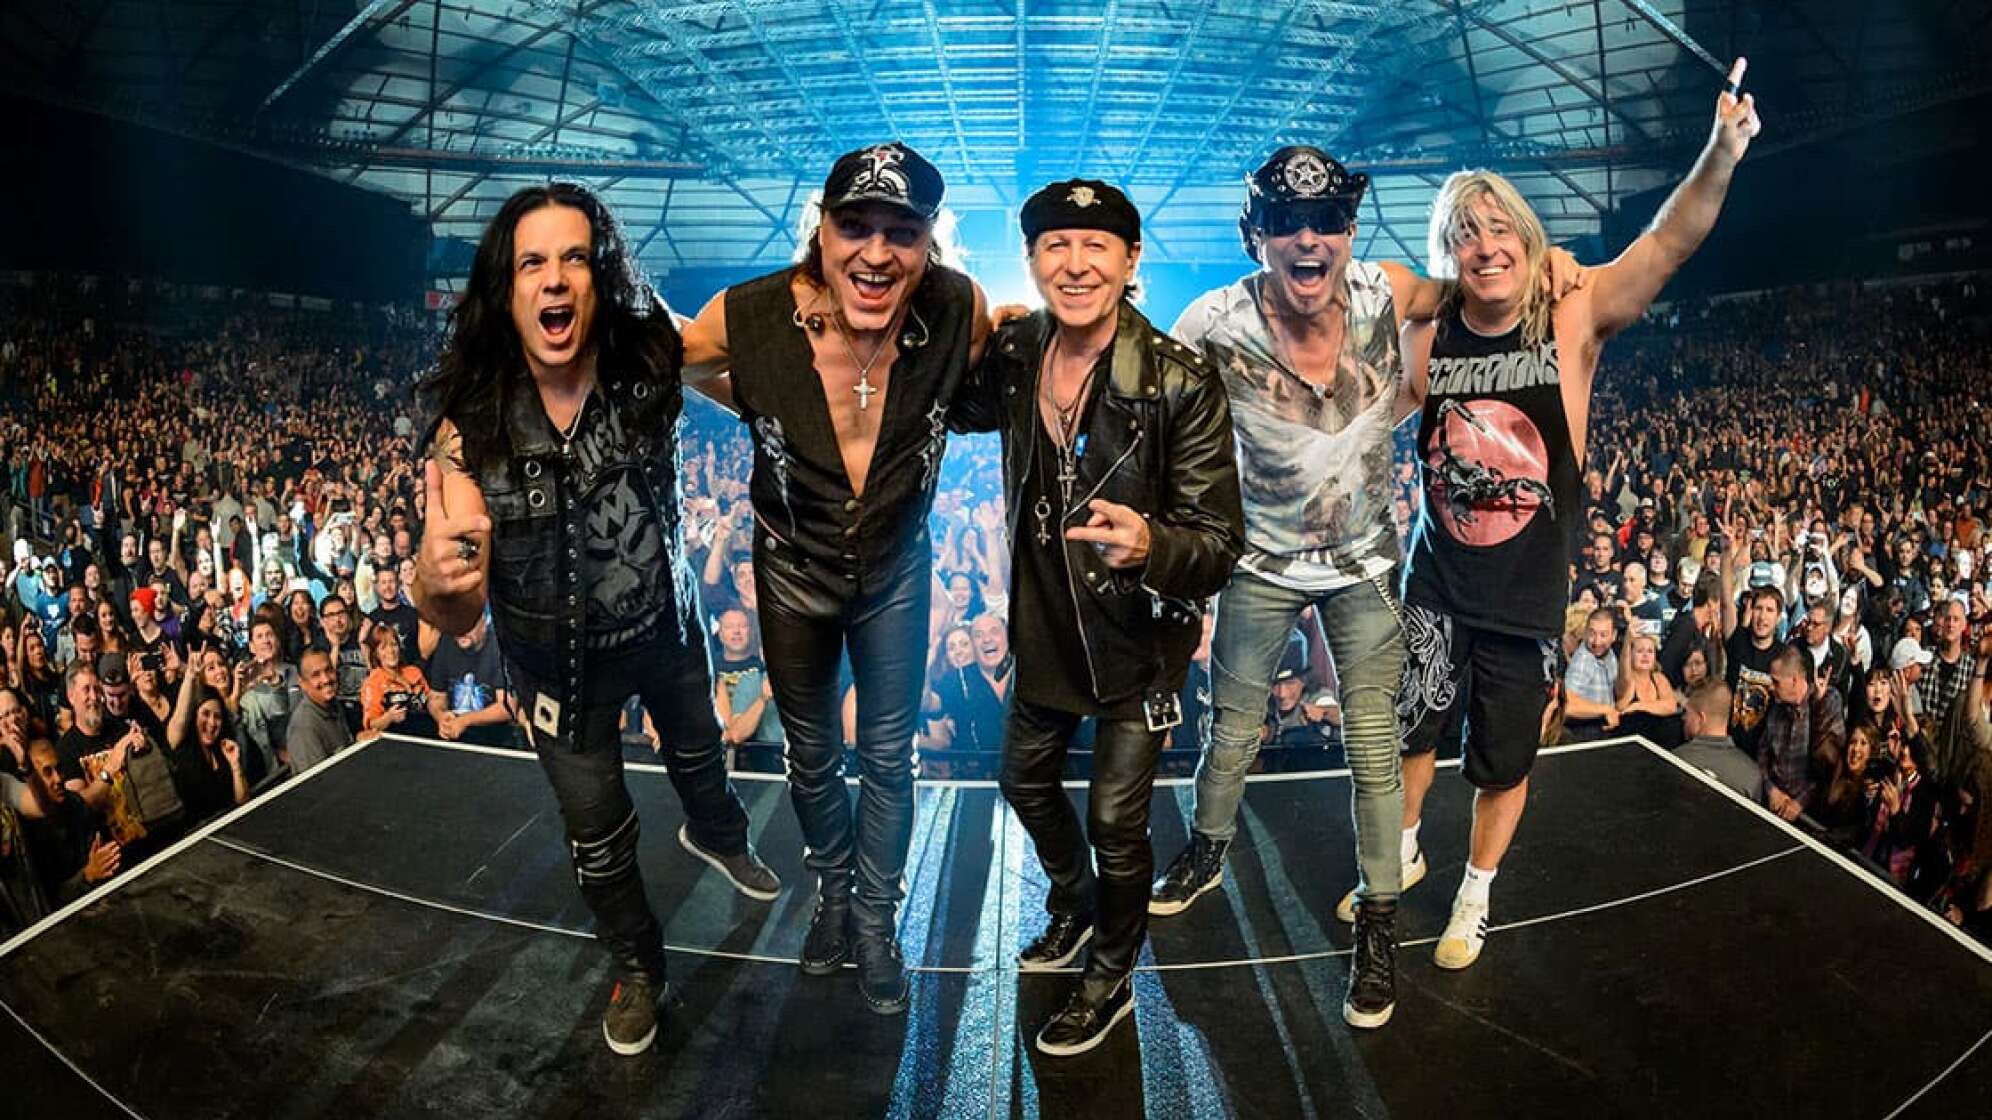 Gruppenfoto der Band Scorpions